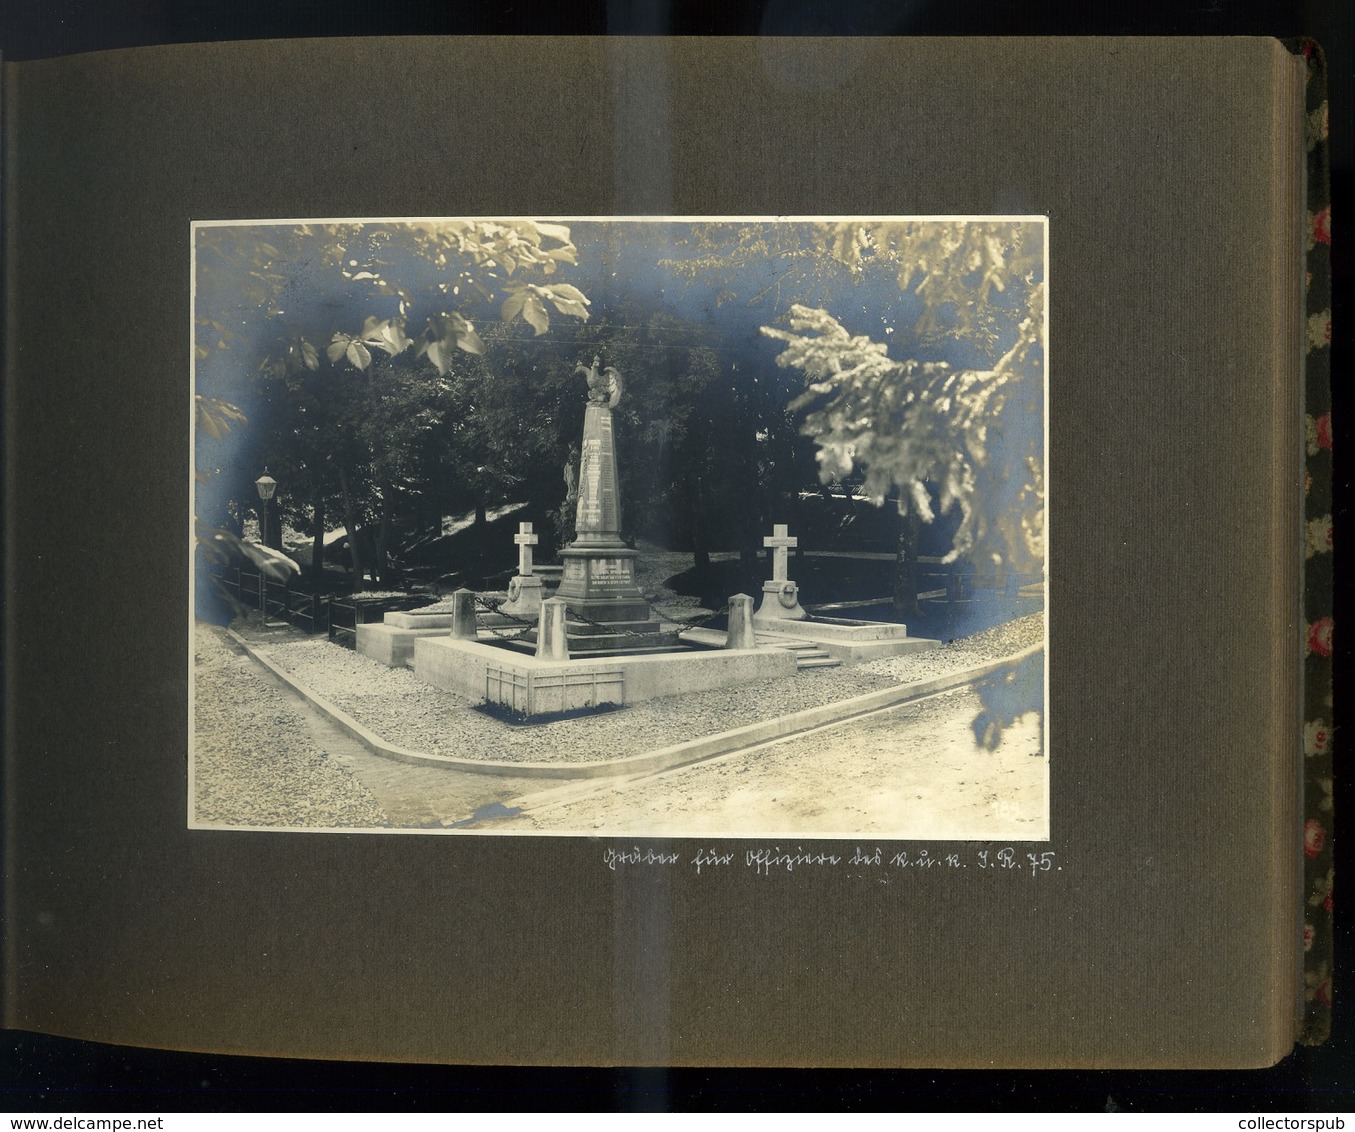 POLAND  LENGYELORSZÁG 1917. Galícia I.VH-s fotóalbum, sok jó város fotóval,katonák,judaica etc. 22 fotó oldal.